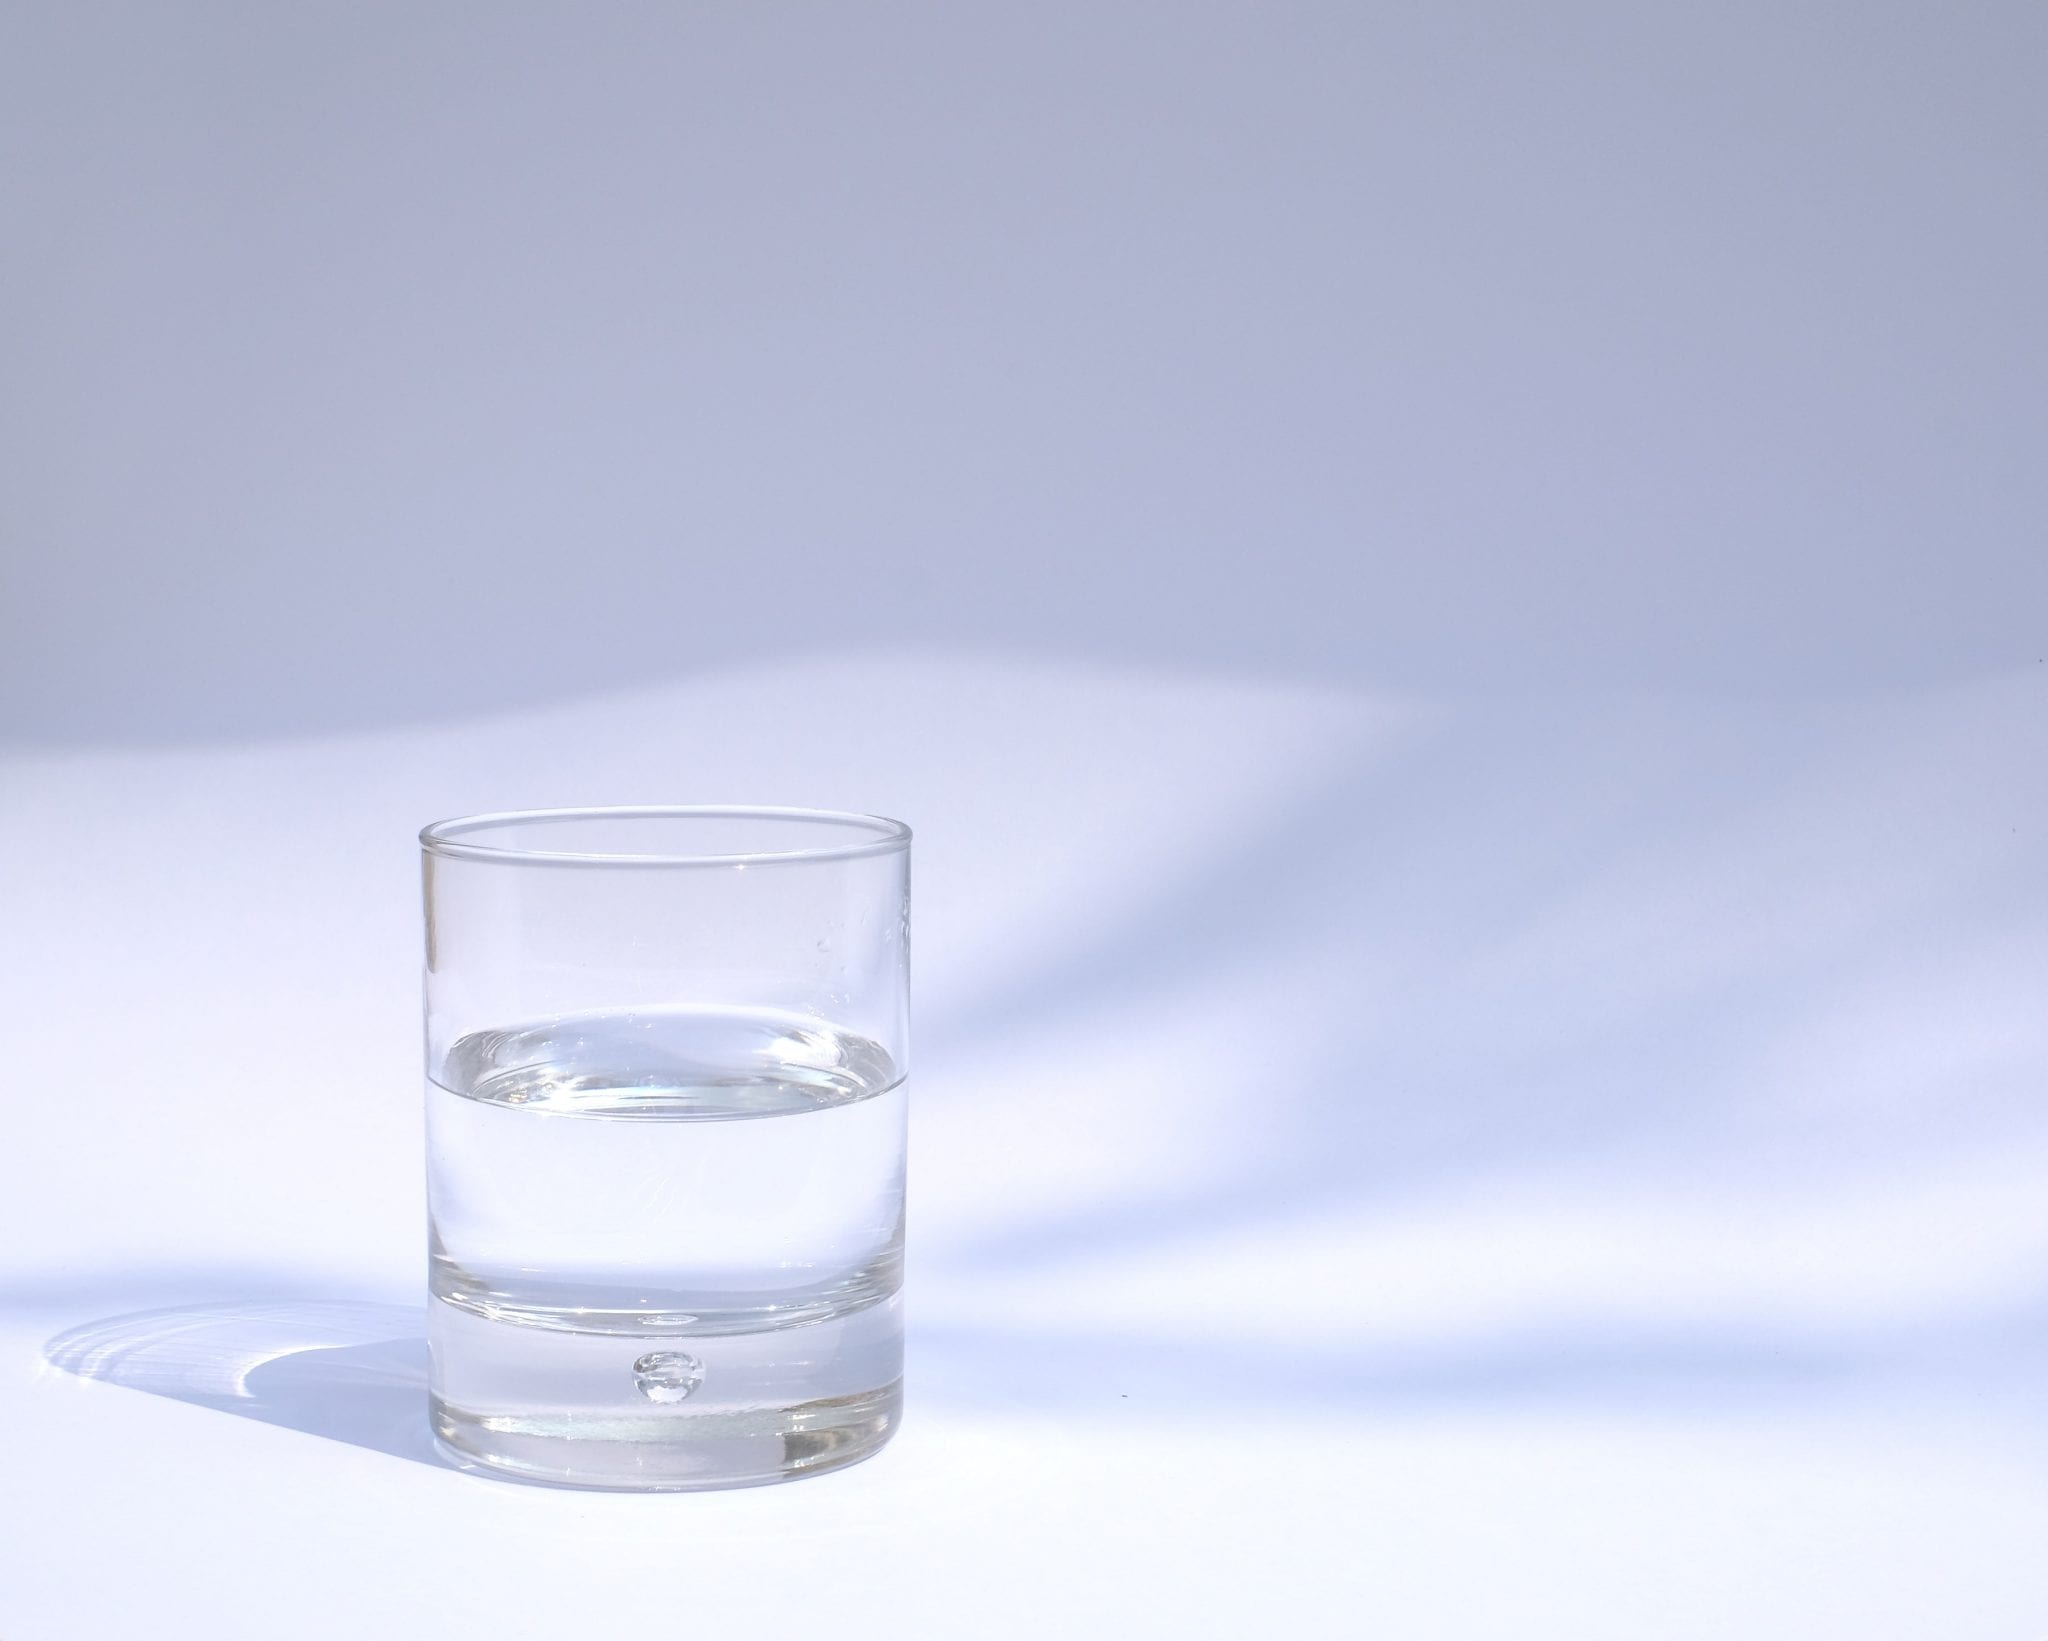 toegang volume lancering Hoe zwaar is een glas water? (Metafoor) - Instituut voor Durf en Daadkracht